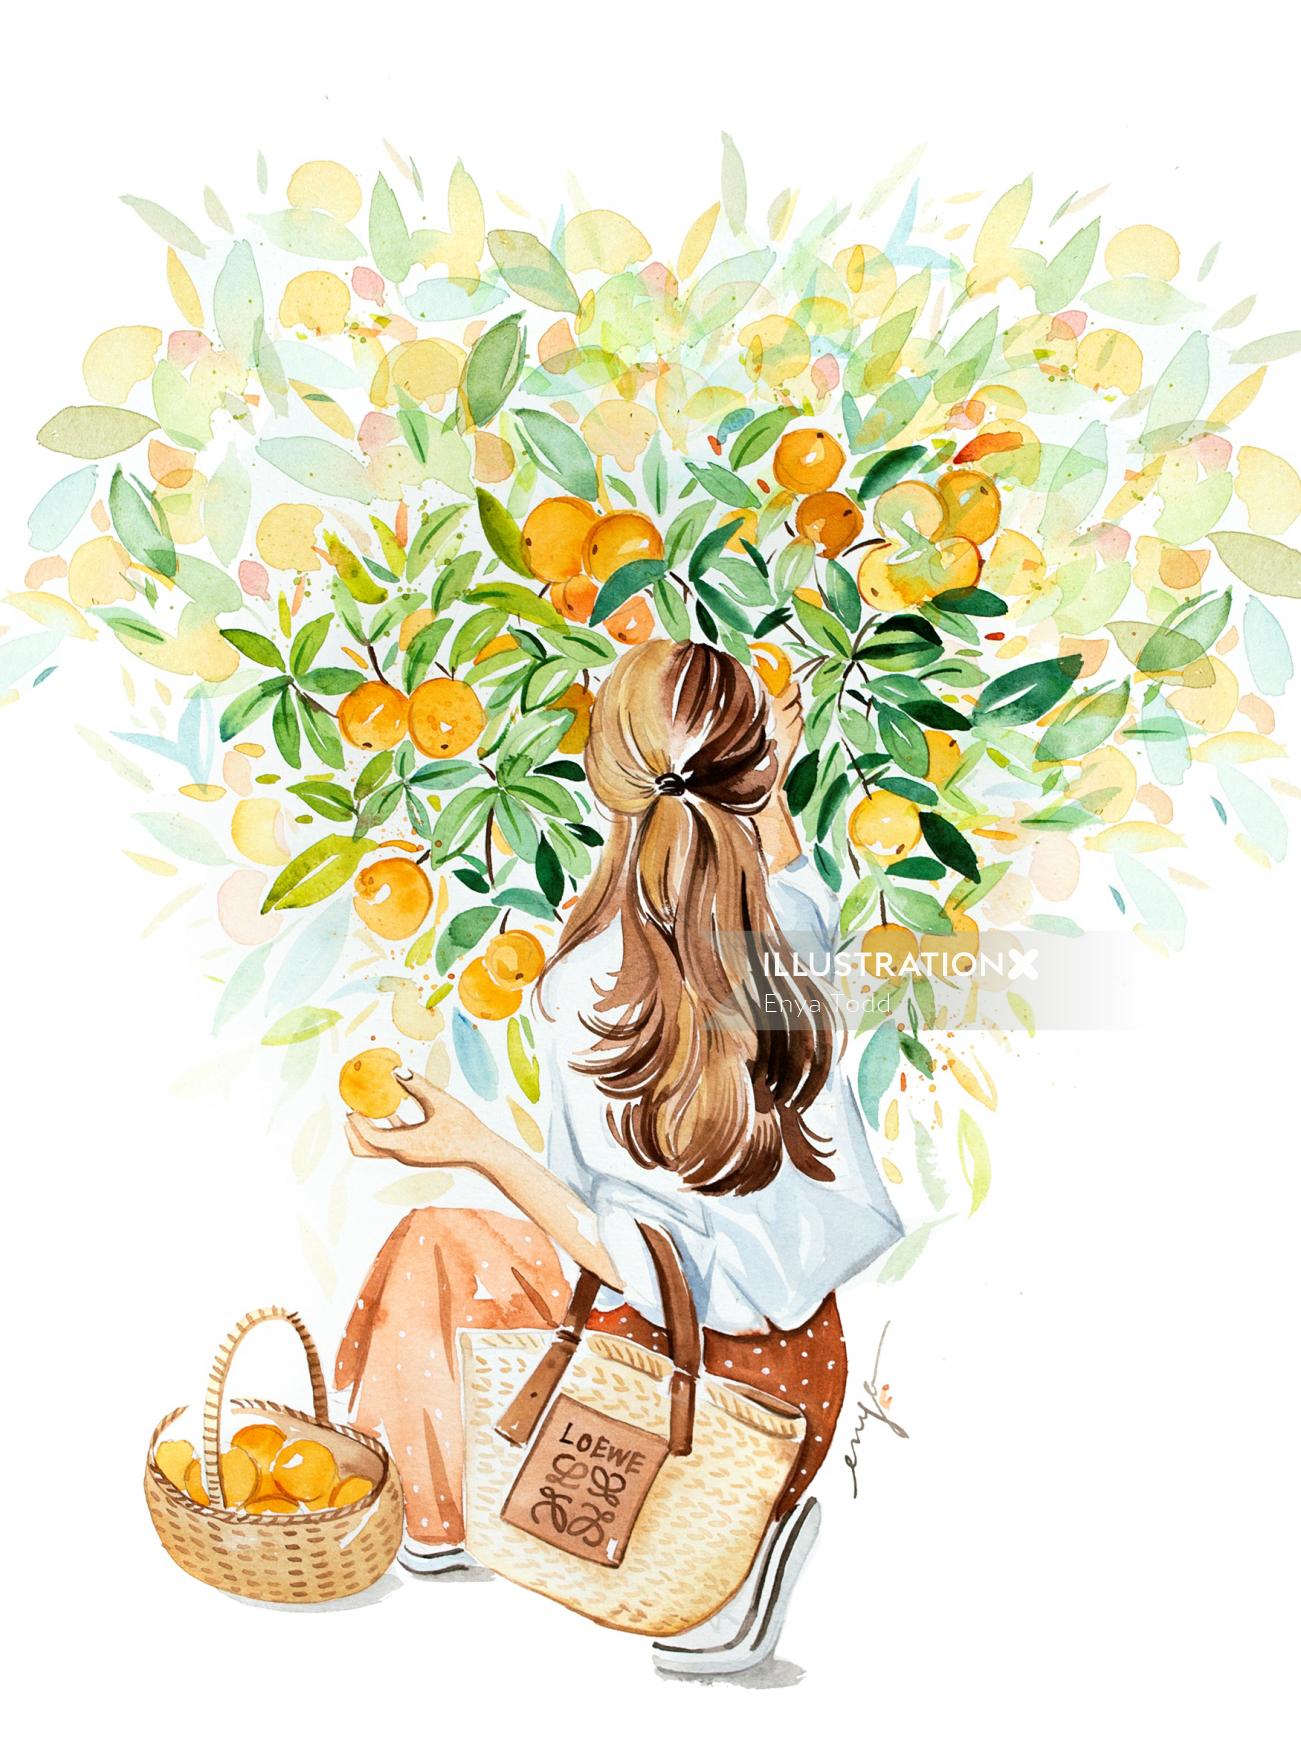 木からオレンジ色の果物を選ぶ女性